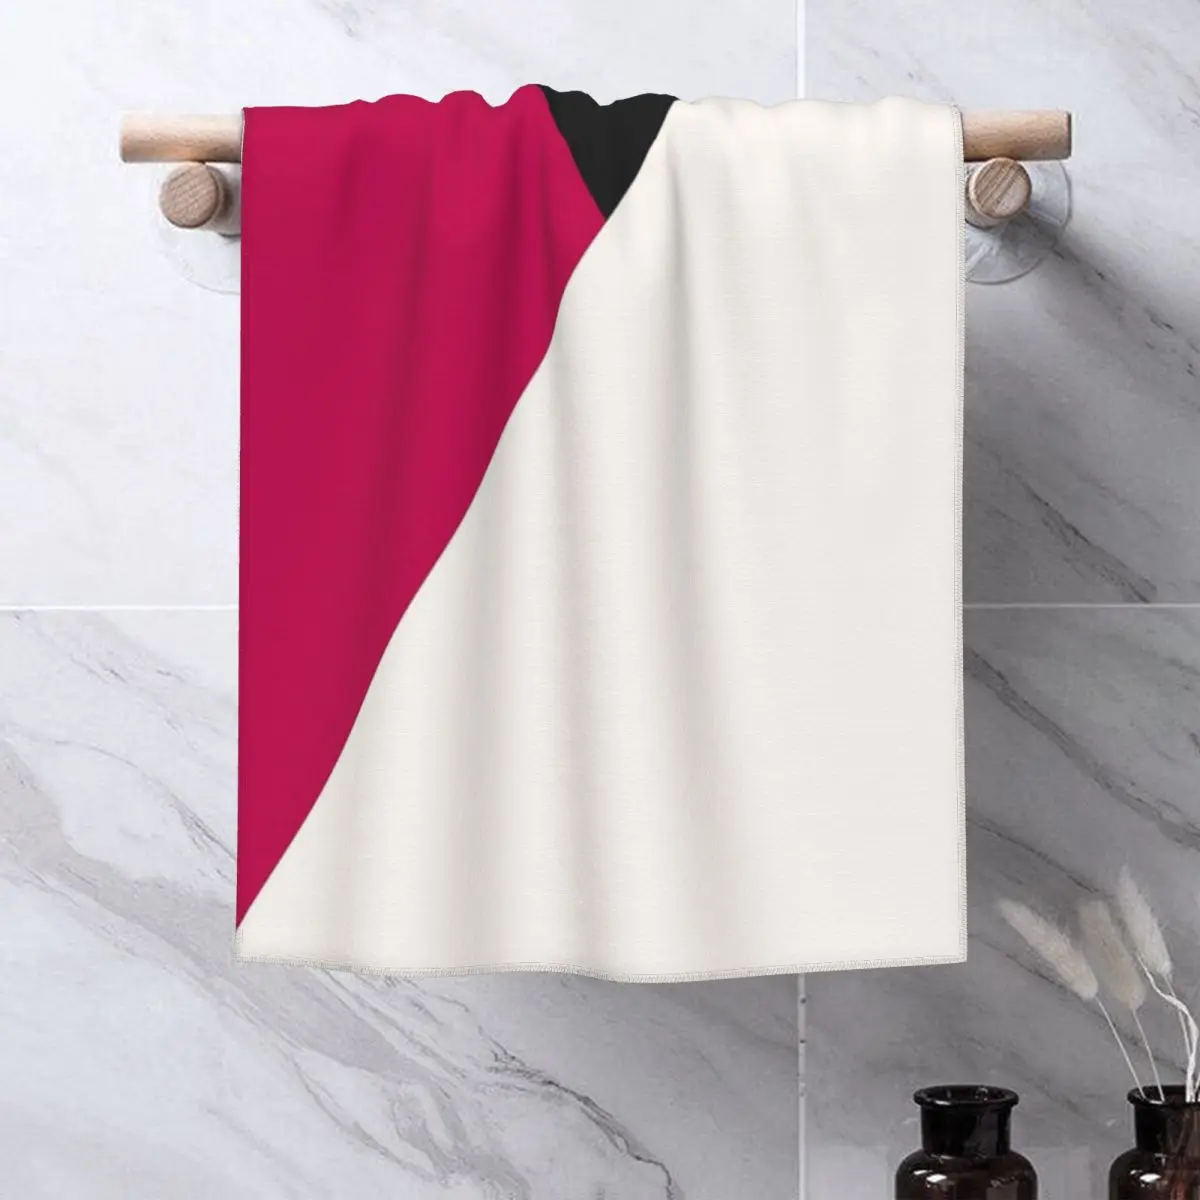 

Трехцветное розовое угольное полотенце с геометрическим рисунком s, полотенце для лица, одеяло, полотенце для волос, кухонное полотенце, большое хлопковое банное полотенце s